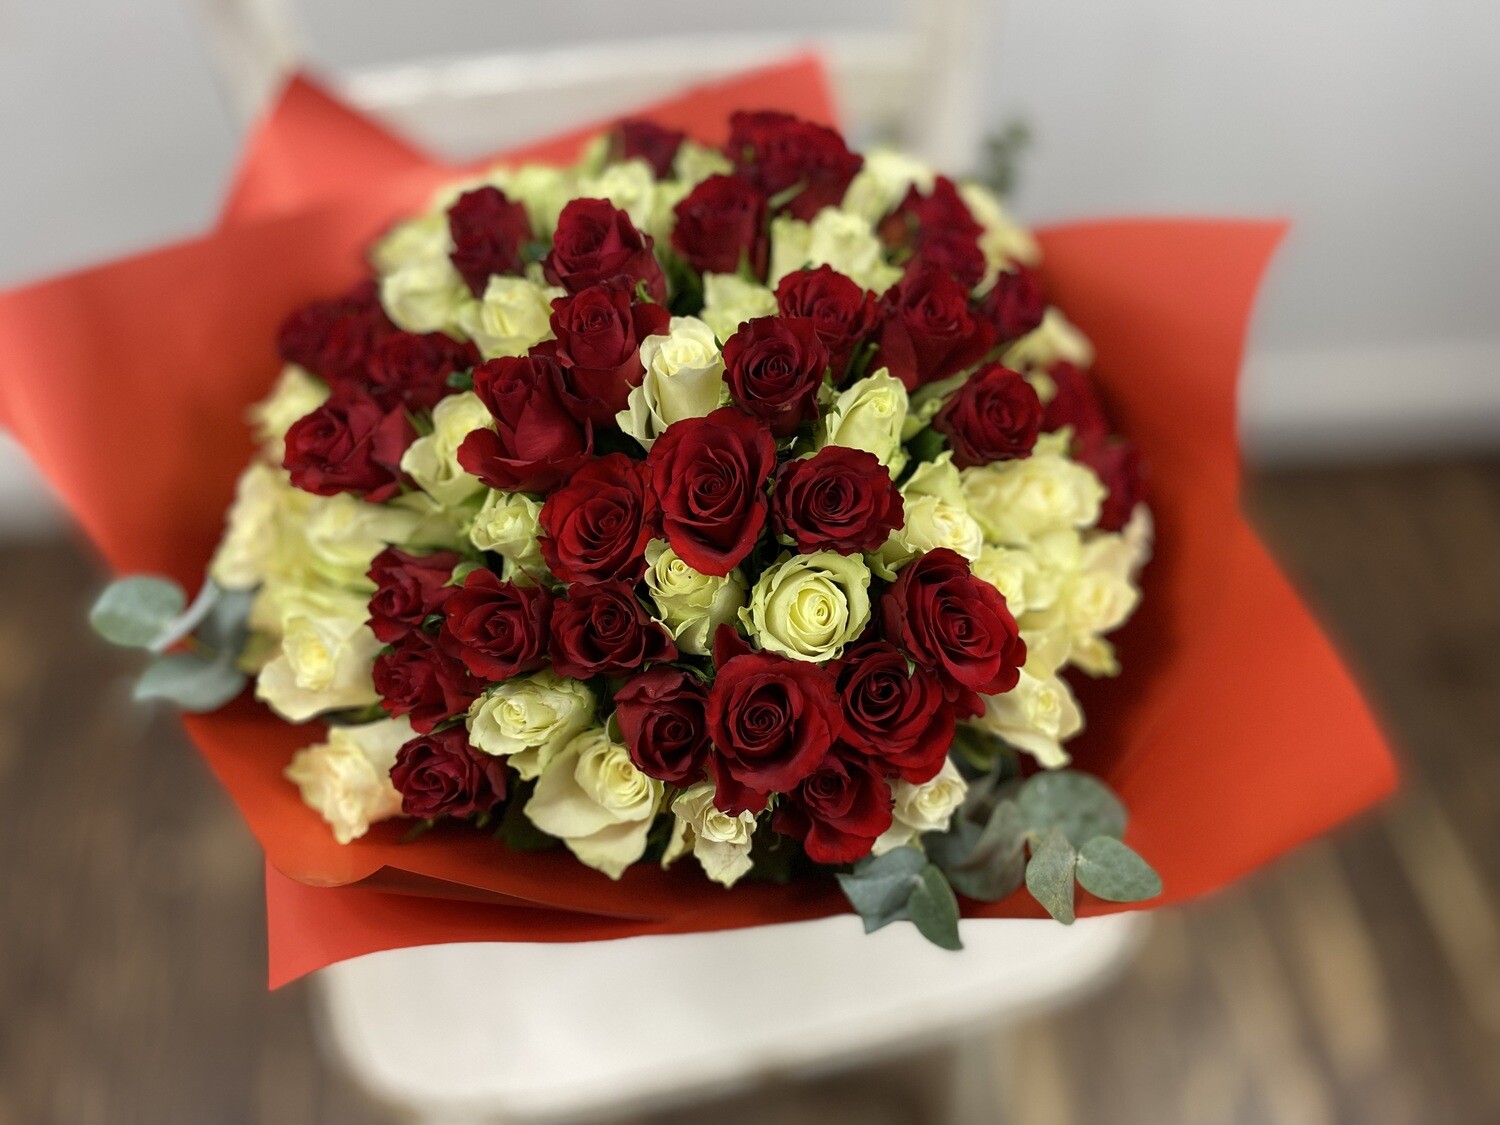 Raudonų ir baltų rožių puokštė „Mano meilei“